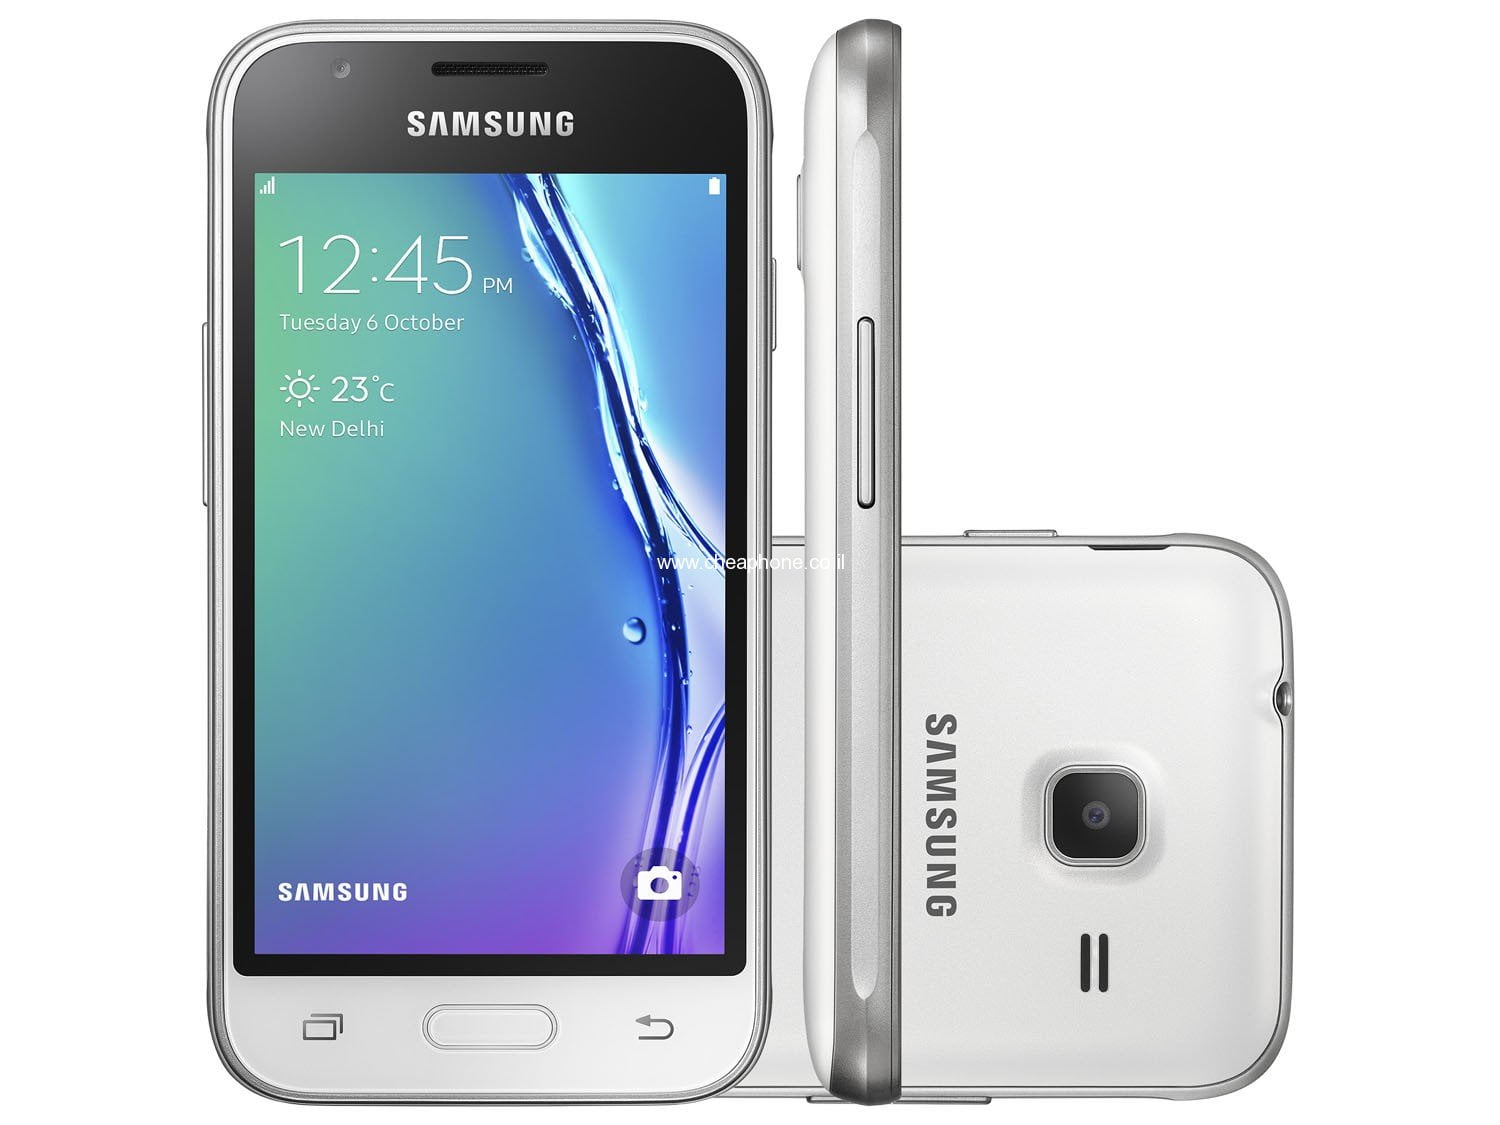 Samsung galaxy mini prime. Samsung Galaxy j1 Mini. Samsung Galaxy j1 Mini SM-j105h. Samsung j1 Mini Prime. Samsung Galaxy j1 Mini Prime.